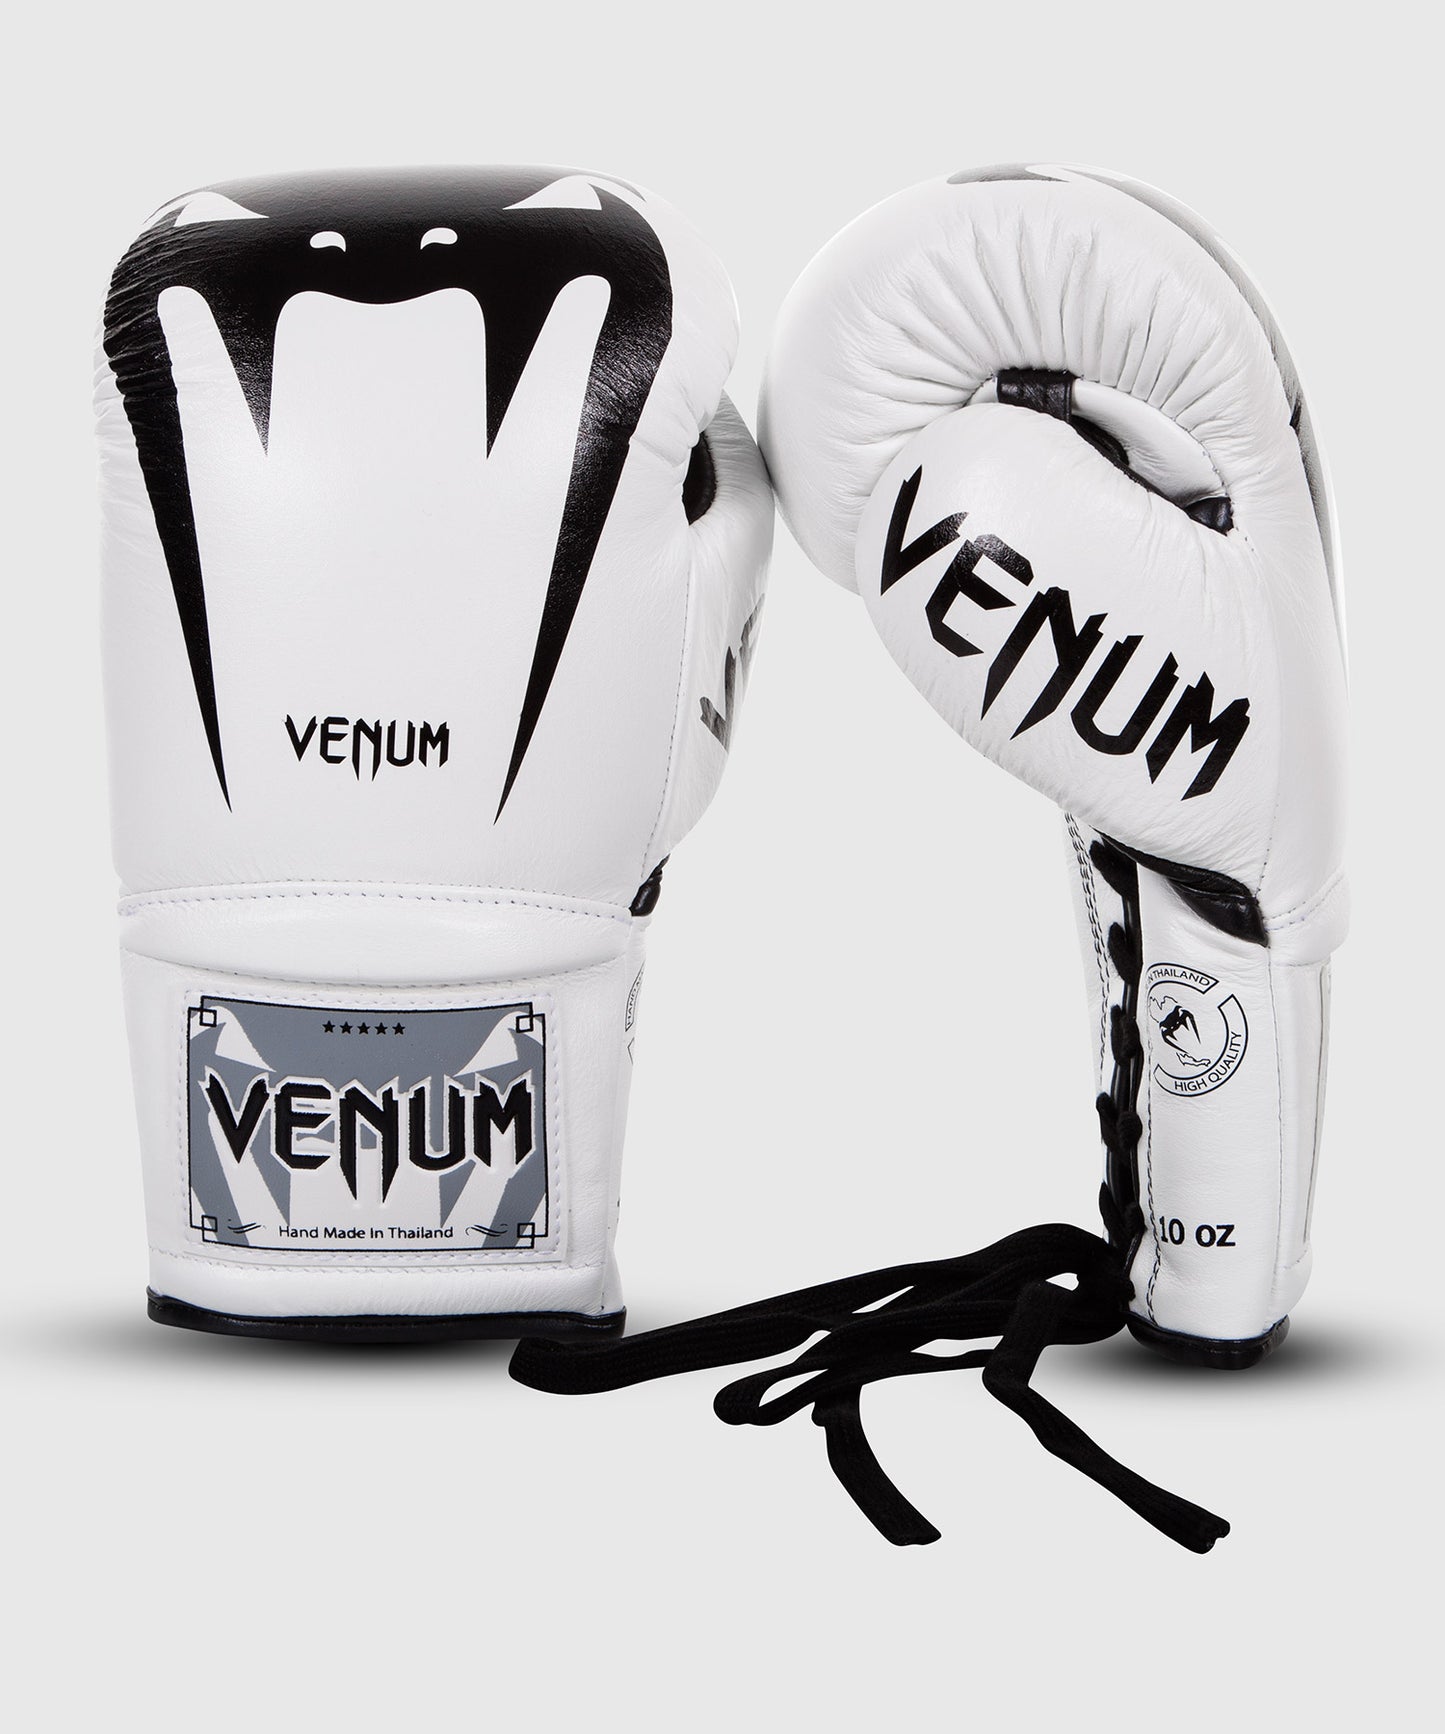 Venum Giant 3.0 Boxhandschuhe - Nappaleder - Mit Schnürung - Weiß